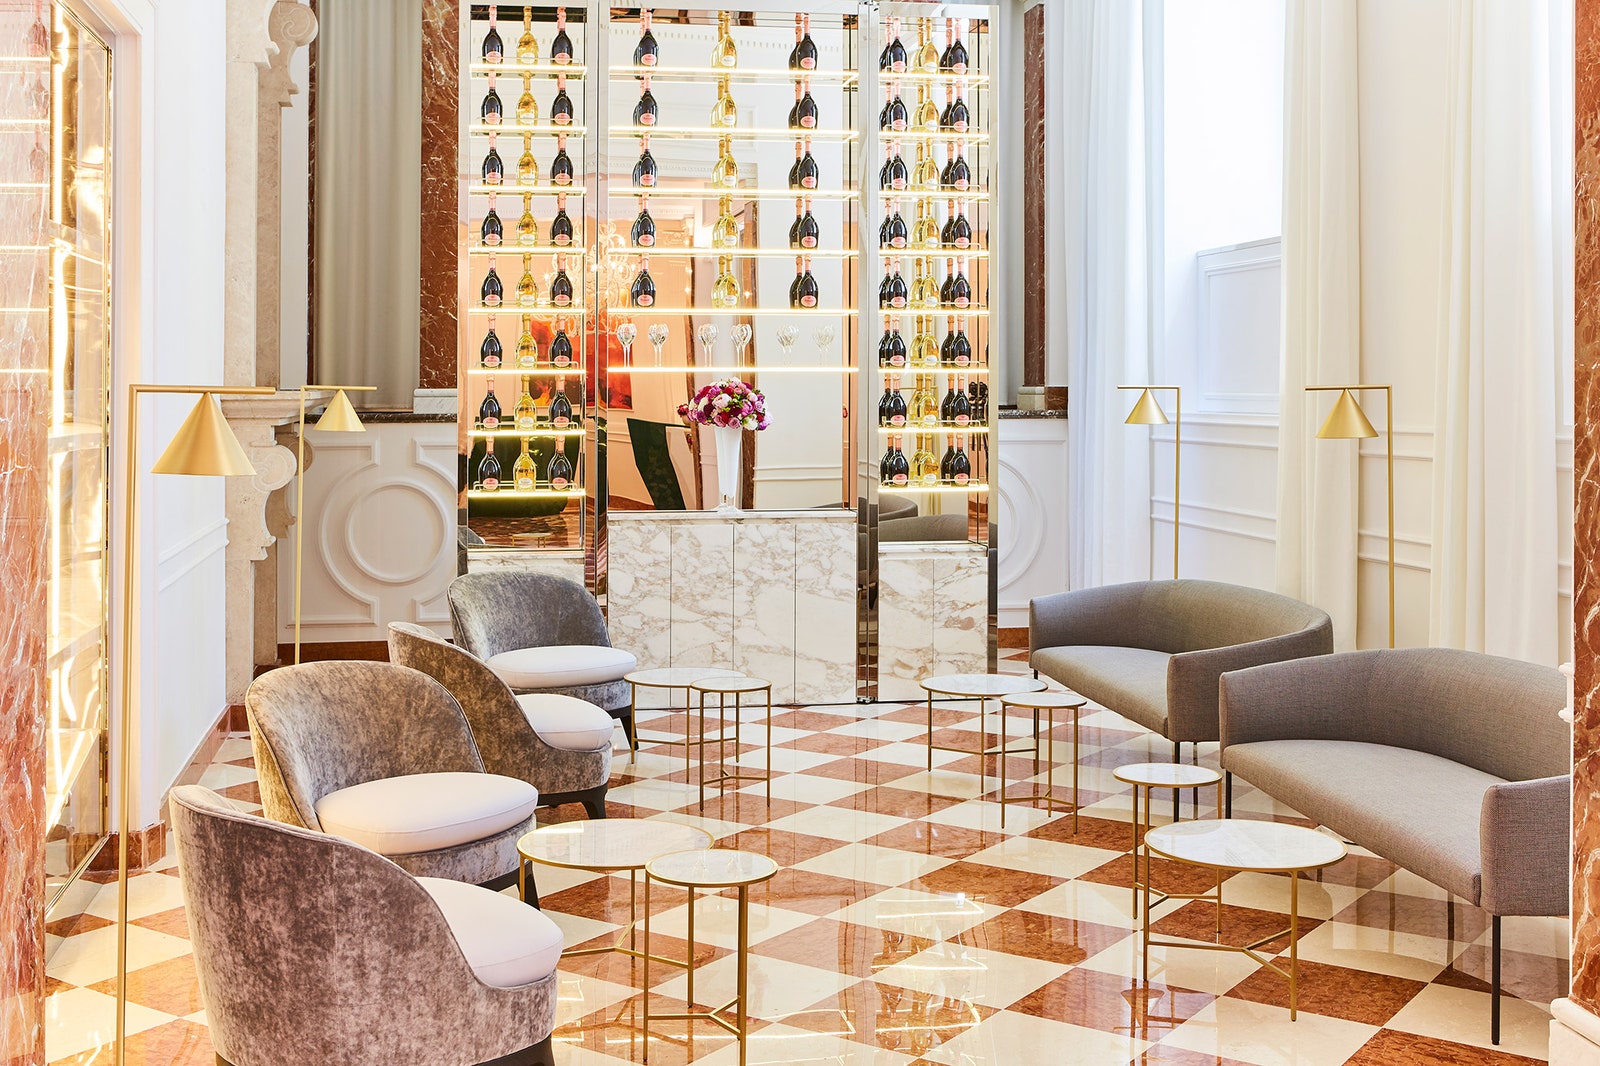 Новый интерьер отеля Sofitel Rome Villa Borghese от ЖанаФилиппа Нуэля